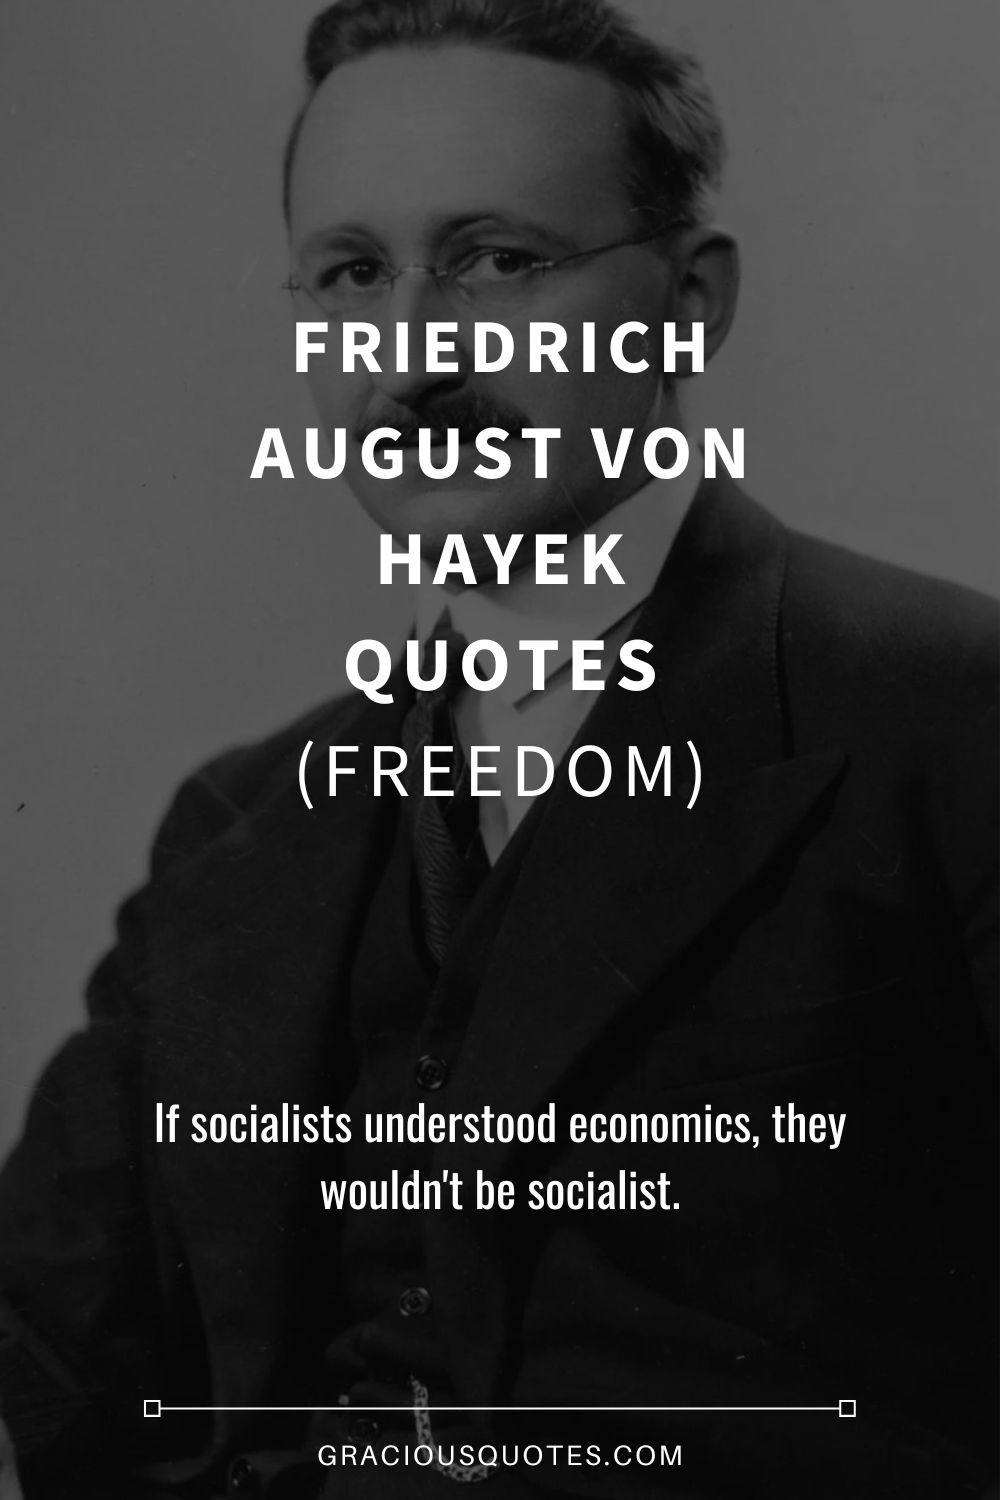 Friedrich August von Hayek Quotes (FREEDOM) - Gracious Quotes